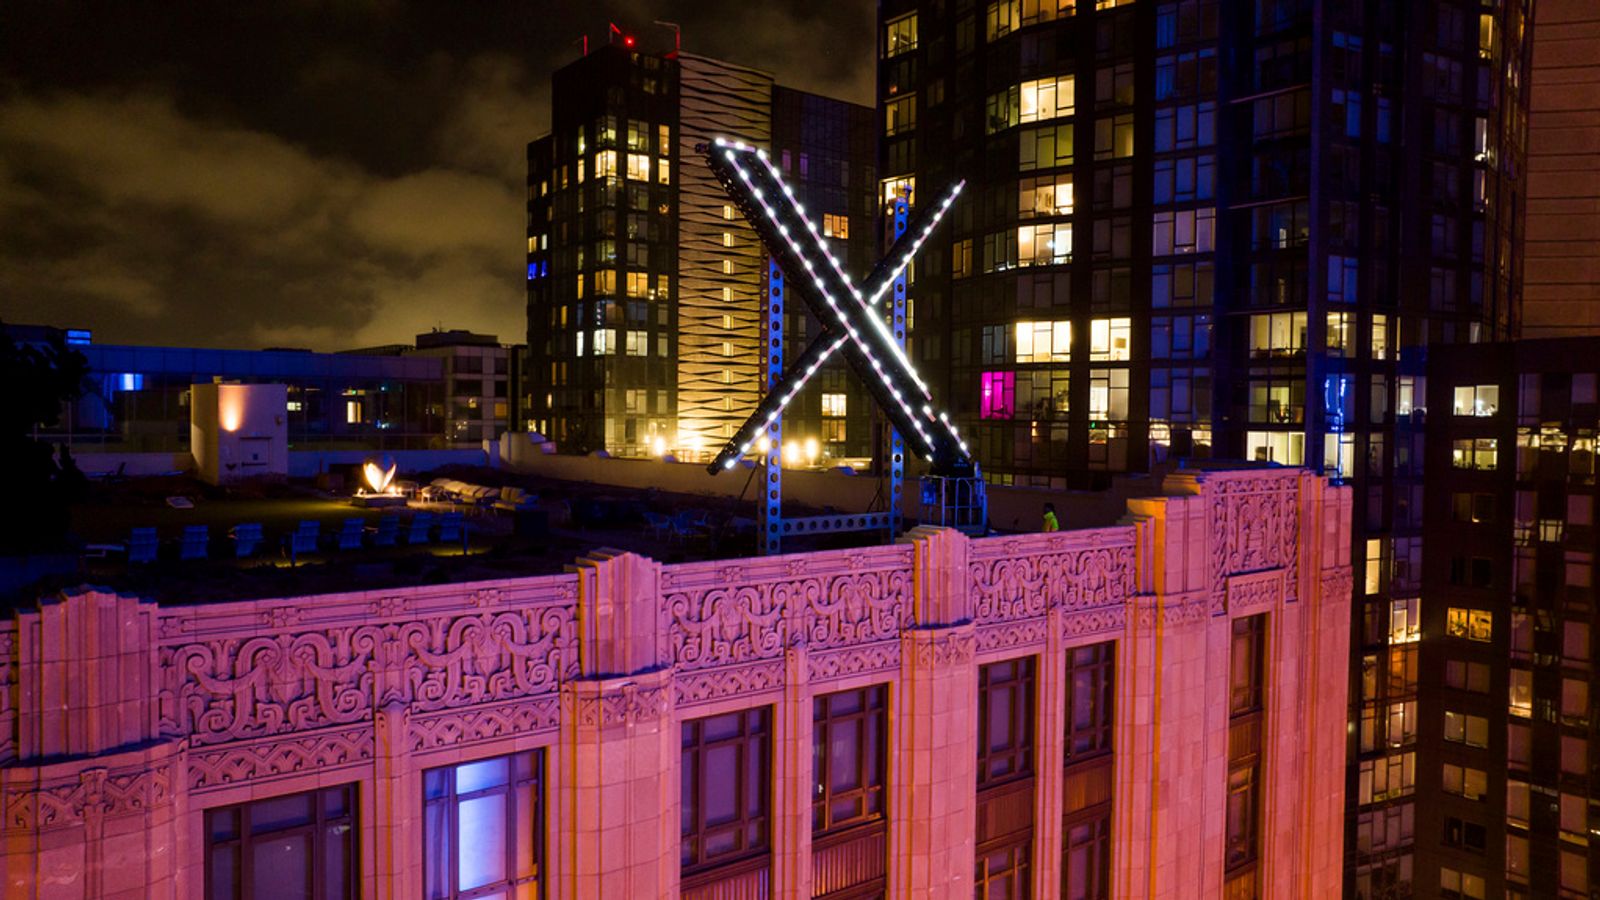 Гигантски мигащ знак X бе премахнат от щаба на Twitter в Сан Франциско след оплаквания и разследване